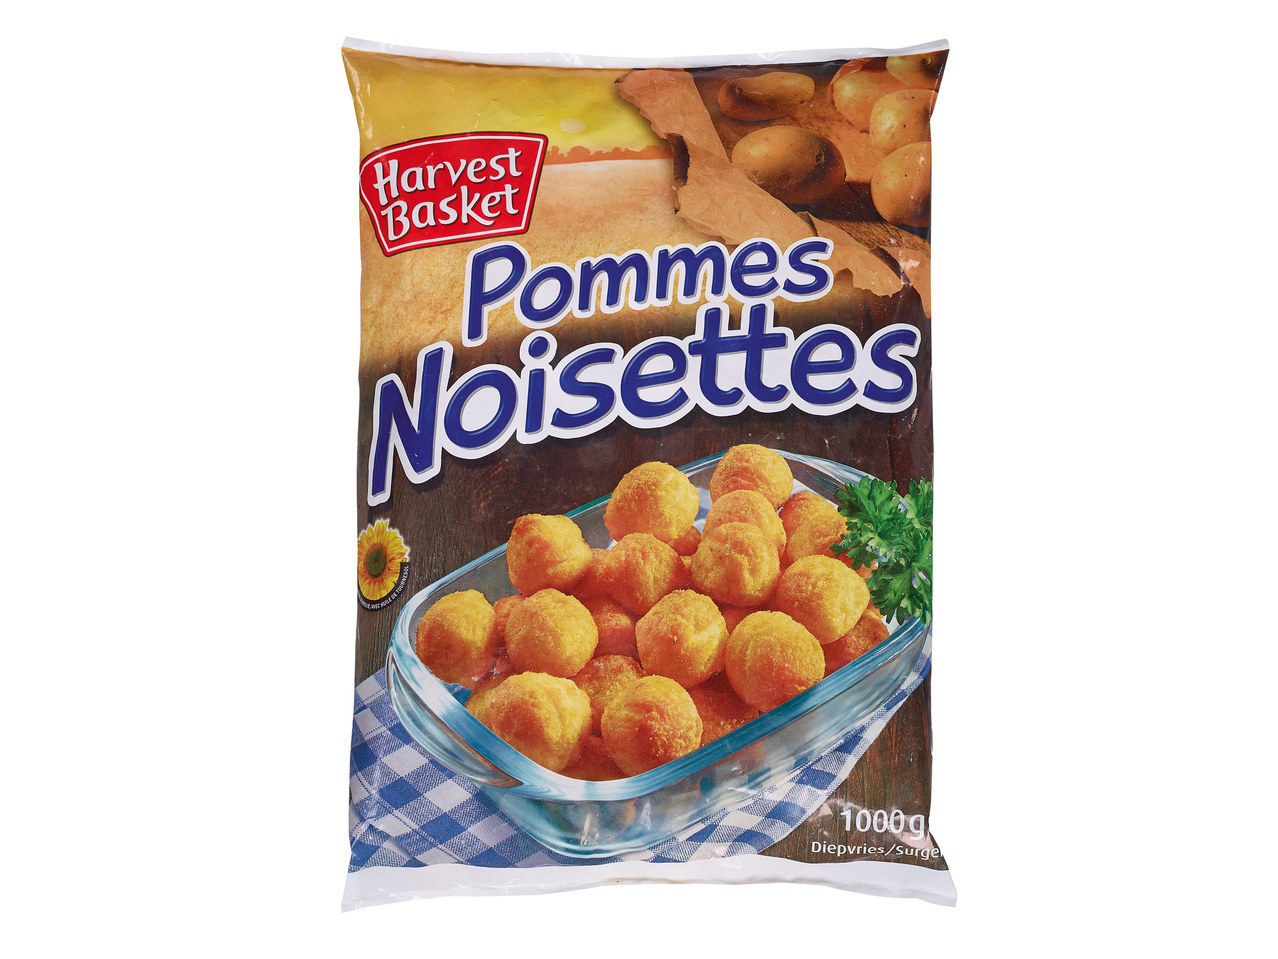 Pommes noisettes